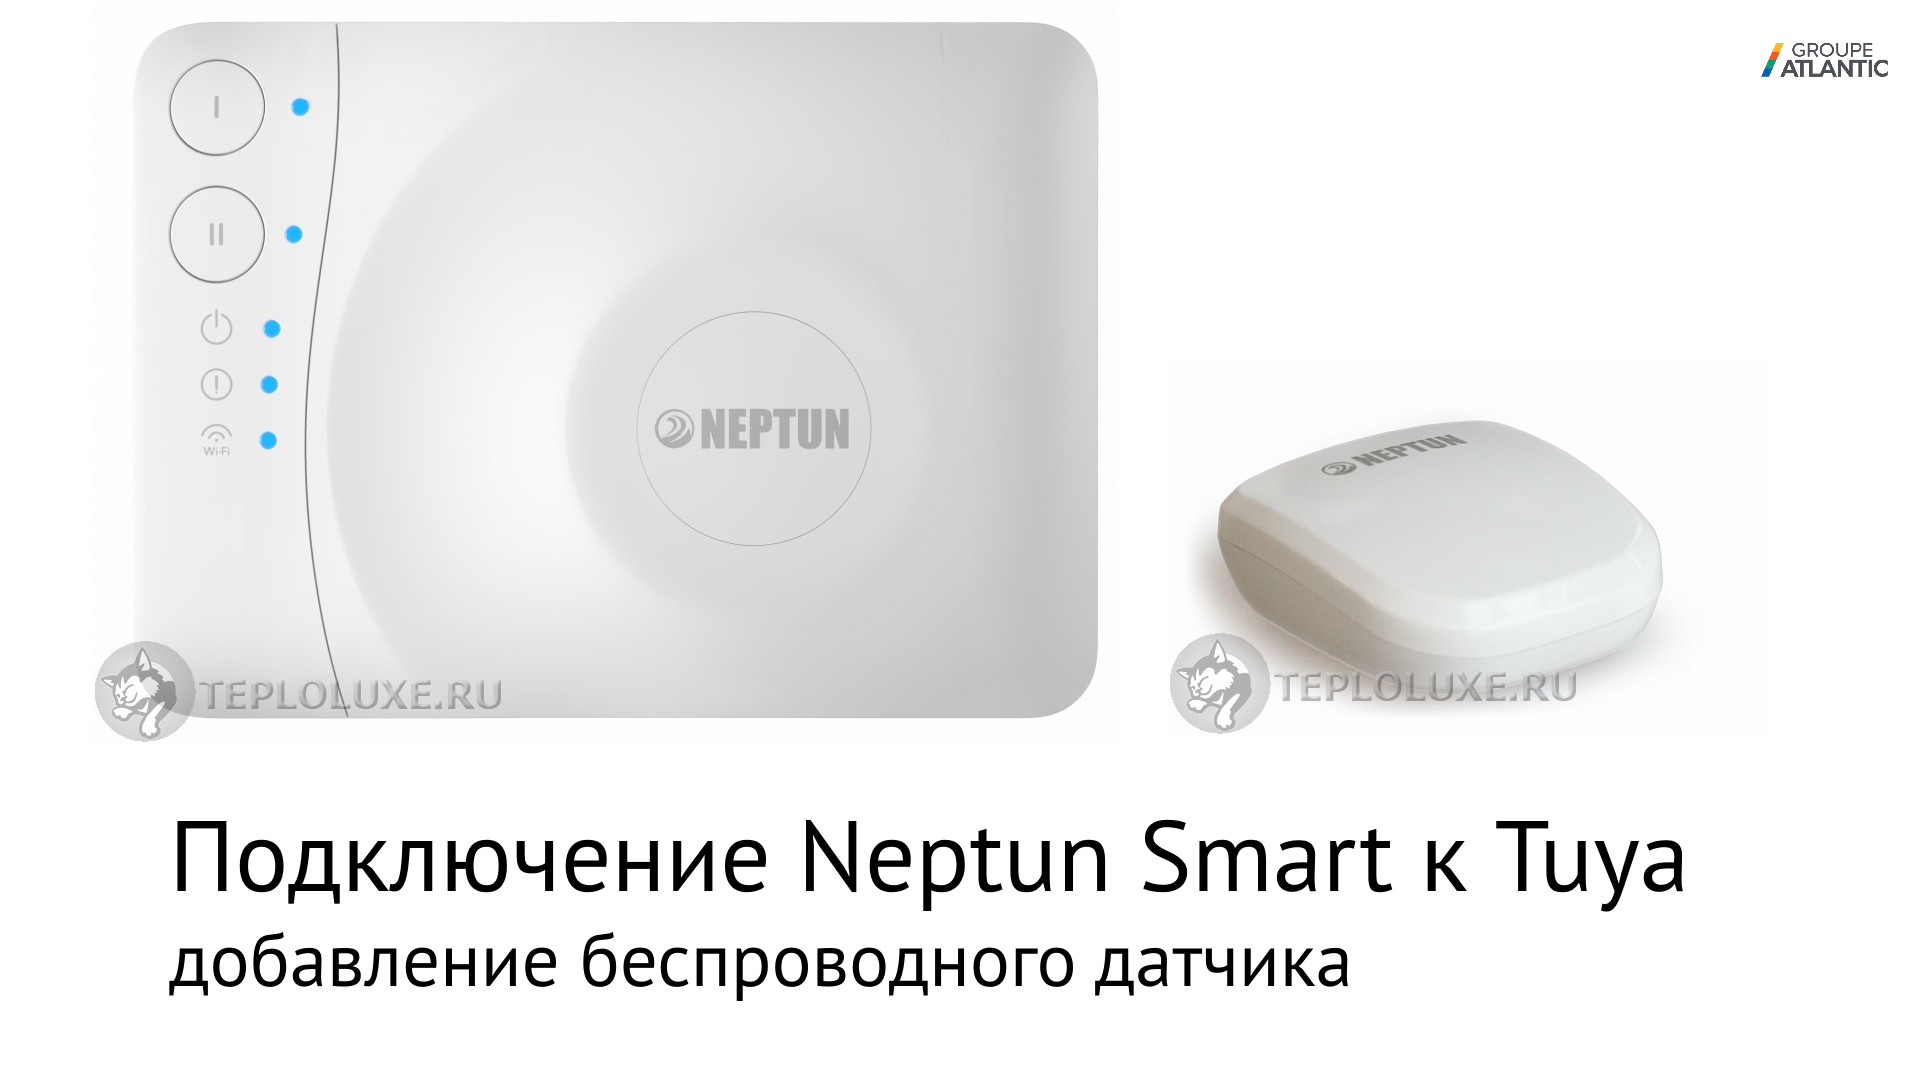 Подключение радиодатчиков к Neptun Smart (Tuya)